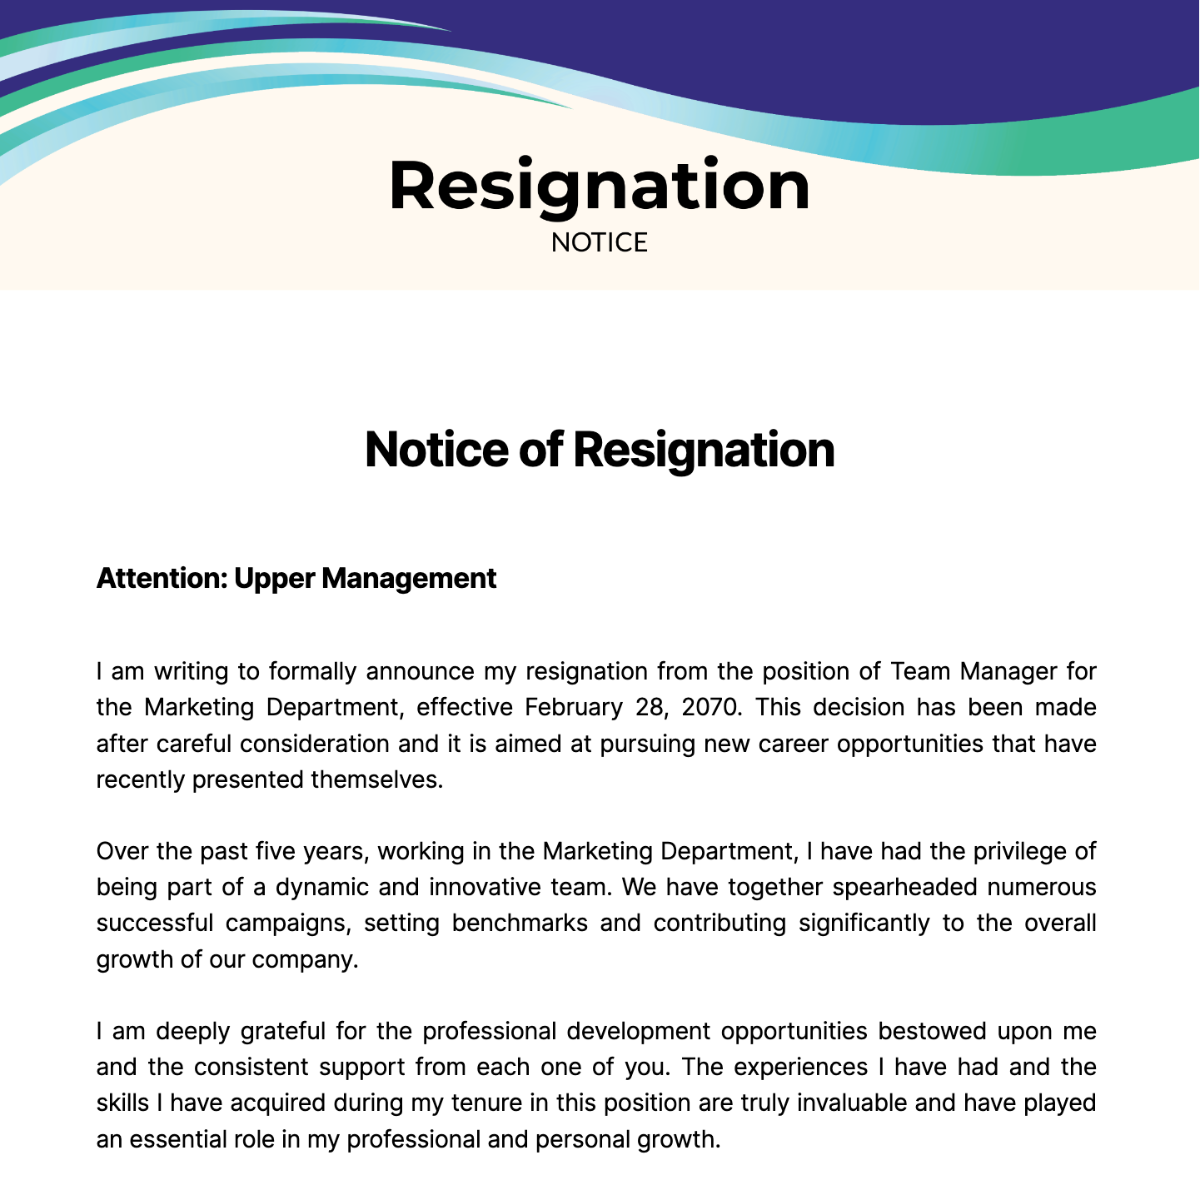 Resignation Notice Template